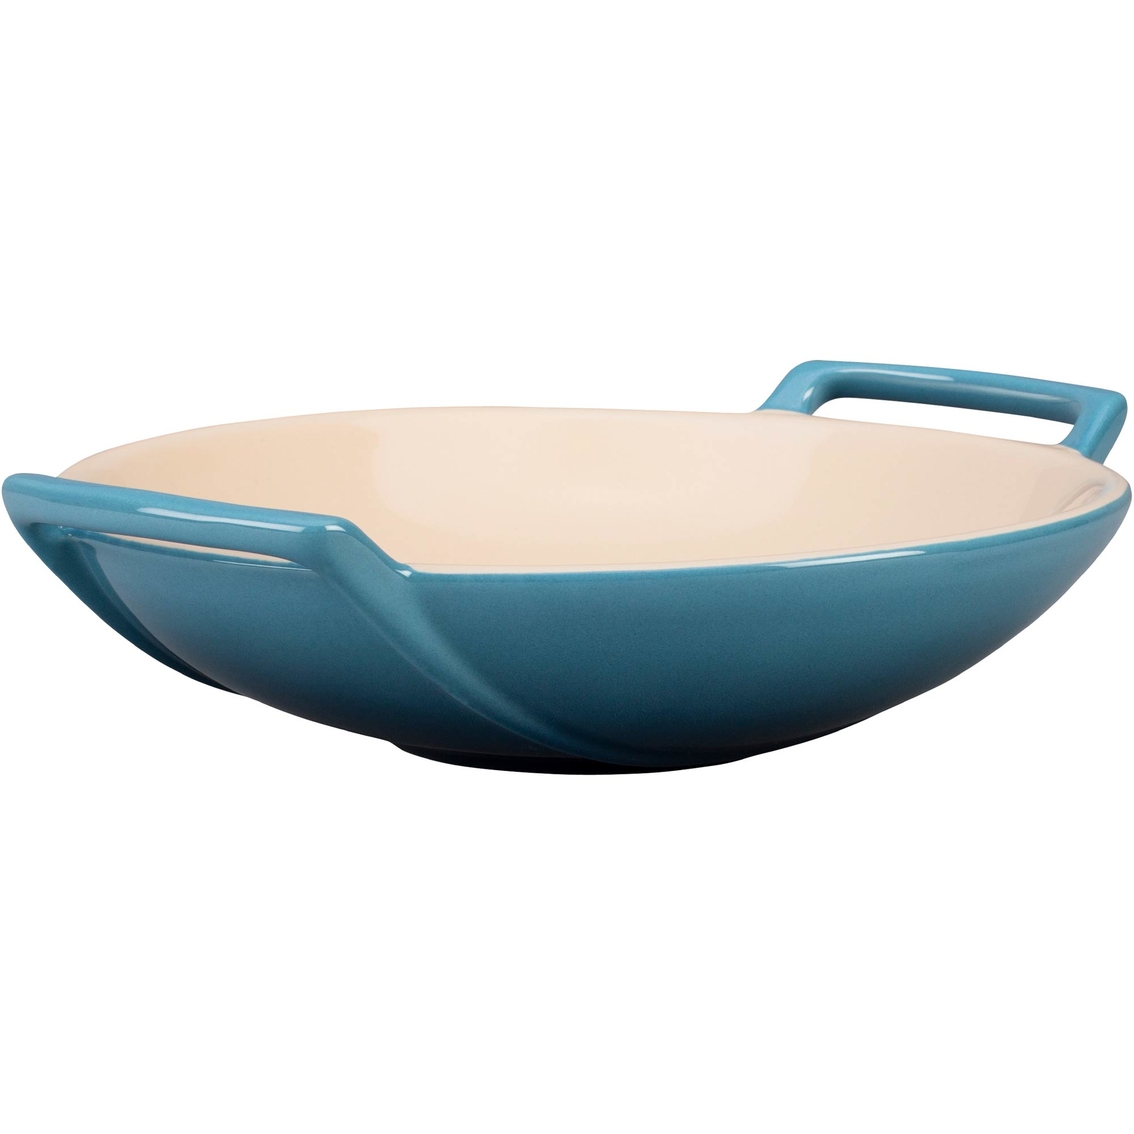 Behandeling uitbreiden Schat Le Creuset Stoneware Wok Dish | Woks | Household | Shop The Exchange